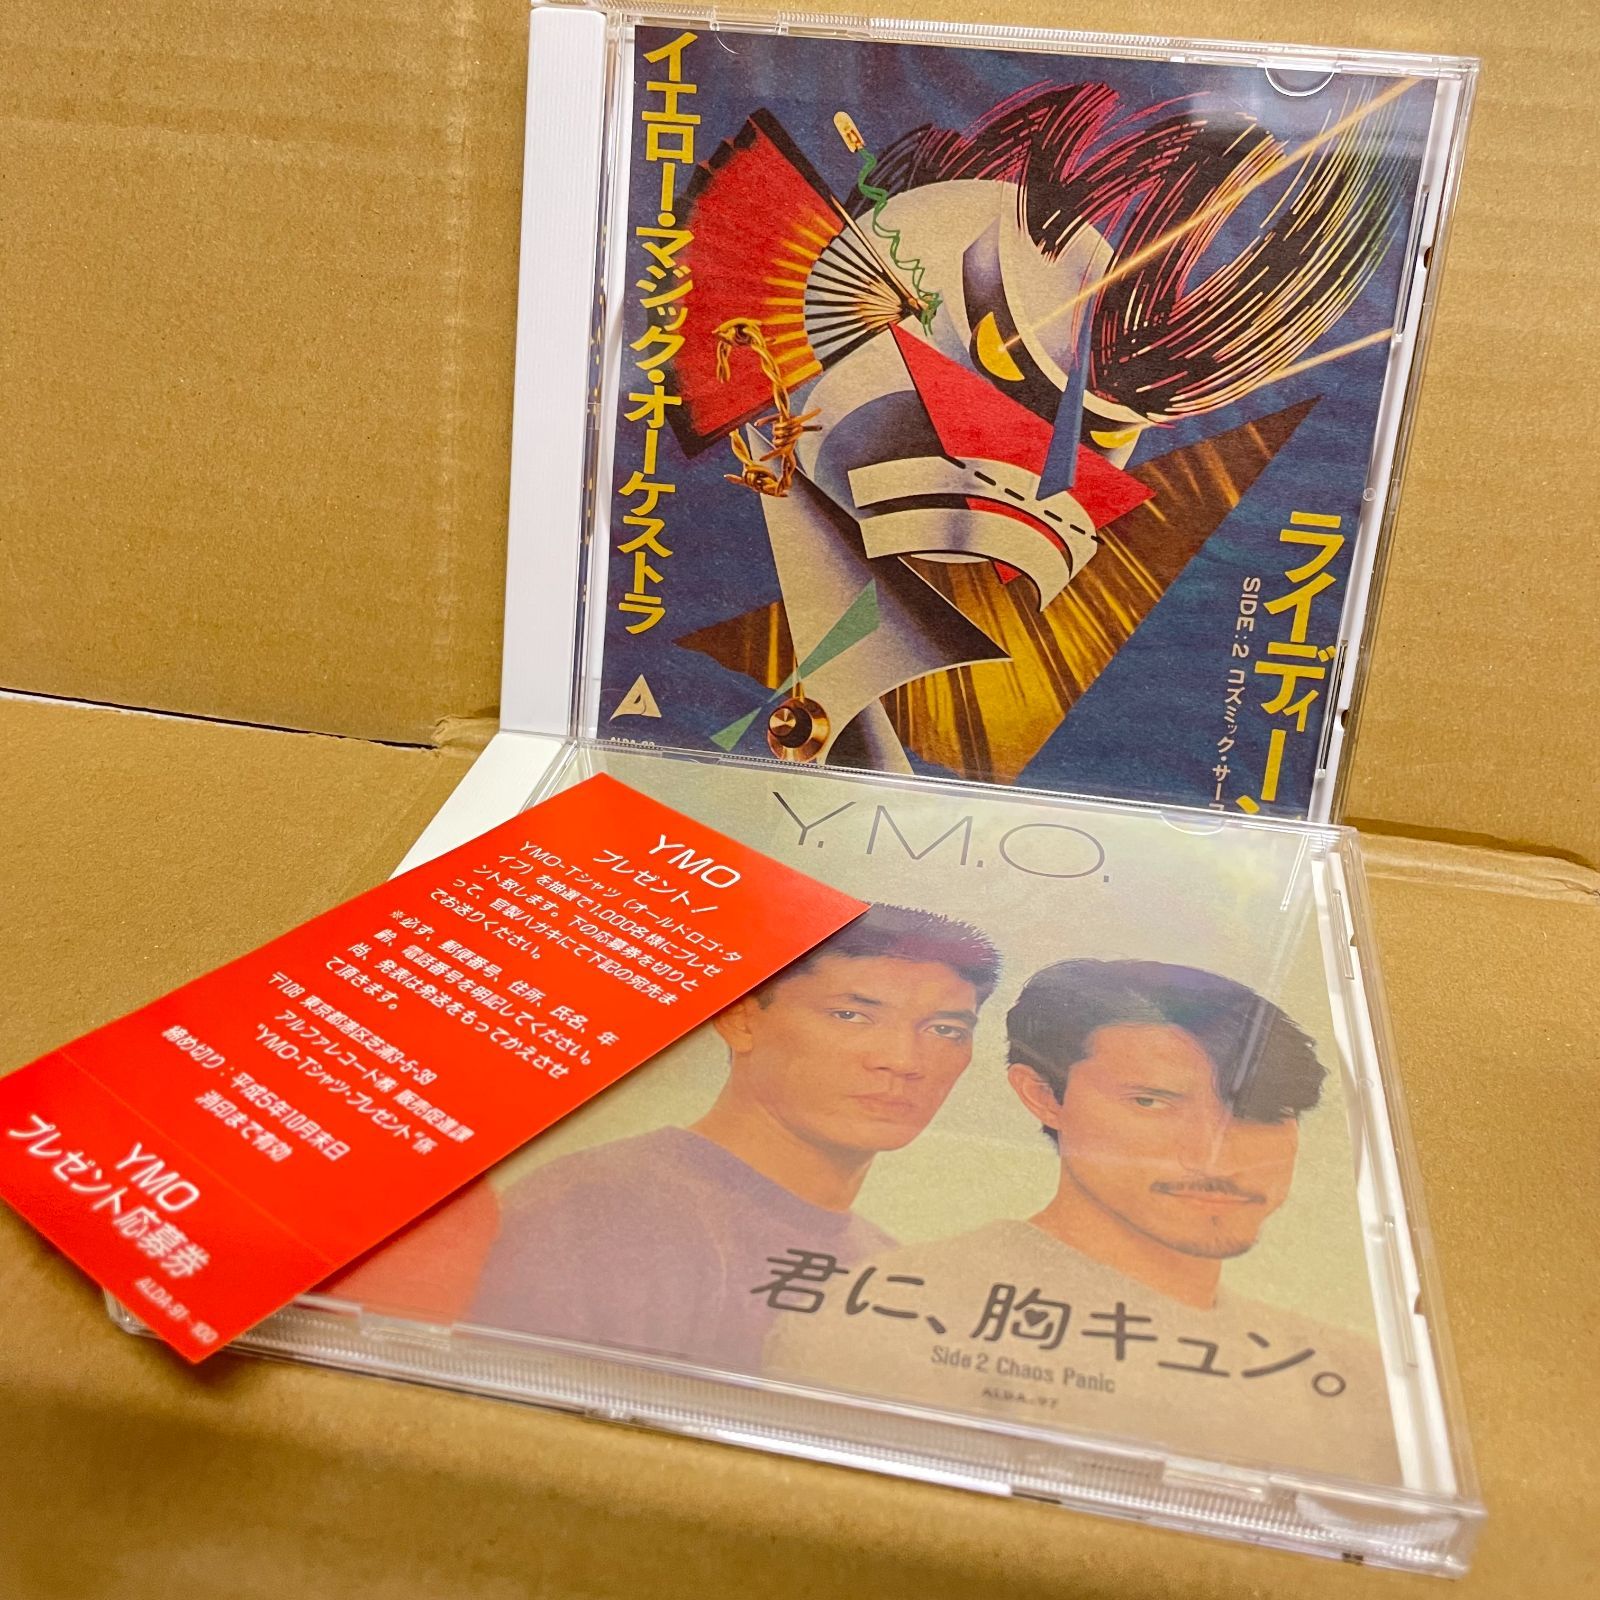 YMO CDシングルBOX CUBIC イエローマジックオーケストラ 細野晴臣 